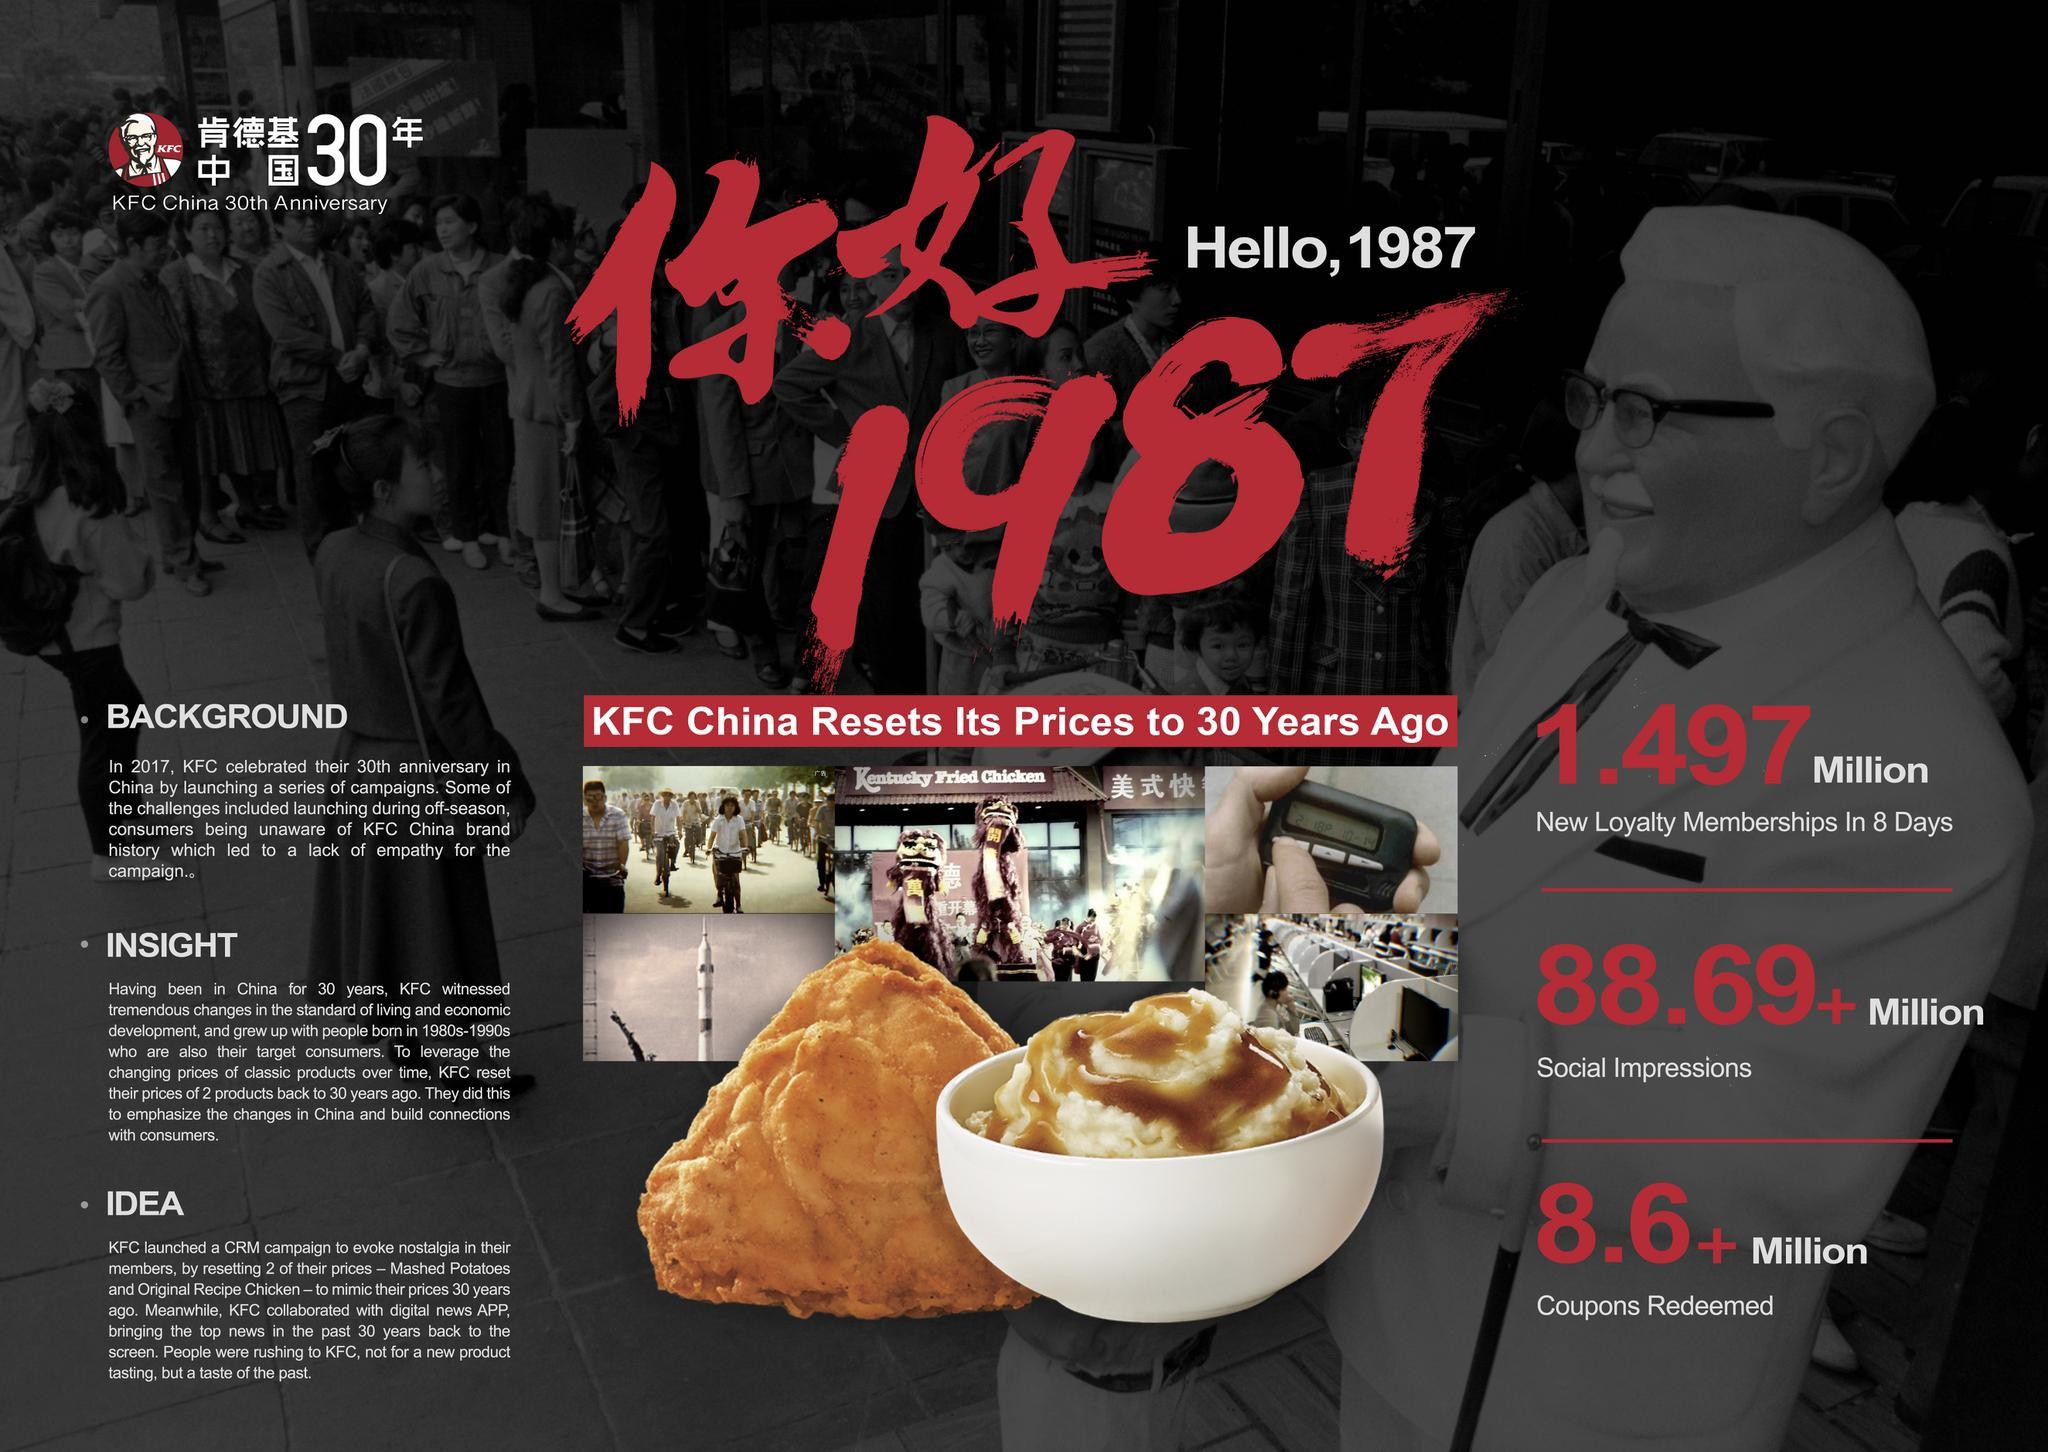 KFC China - Hello 1987